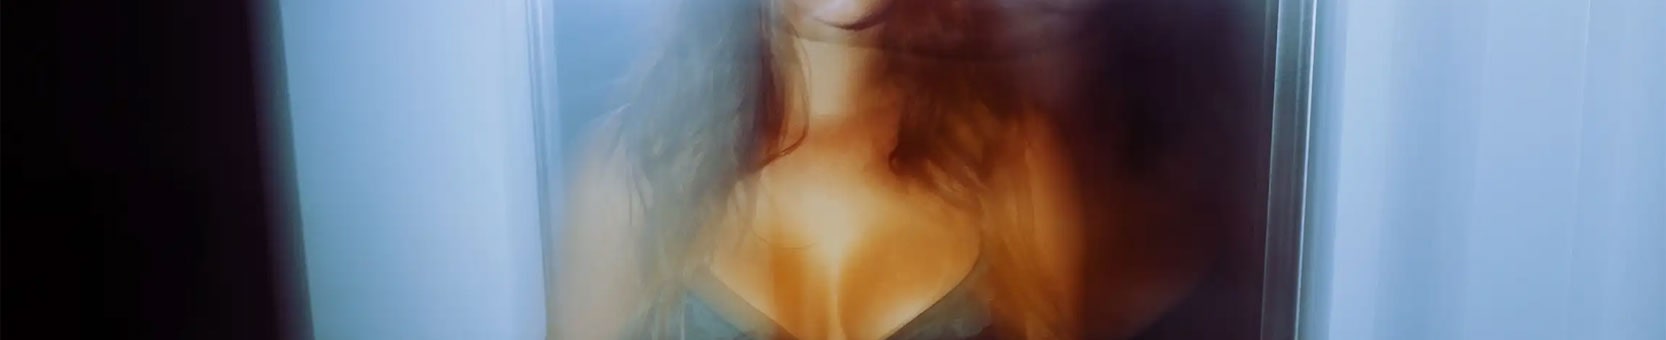 Eva Lovia Official免费视频